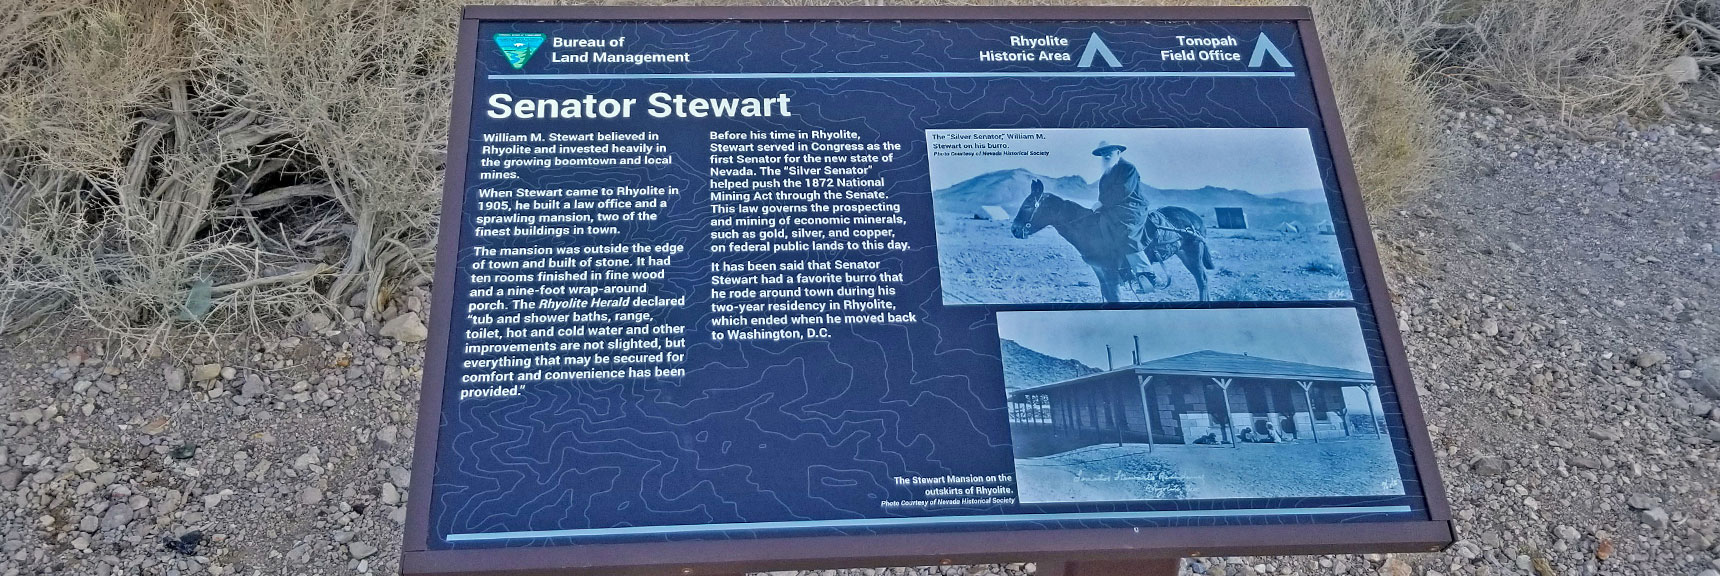 Senator Stewart, Nevada's First Senator | Rhyolite Ghost Town | Death Valley Area, Nevada